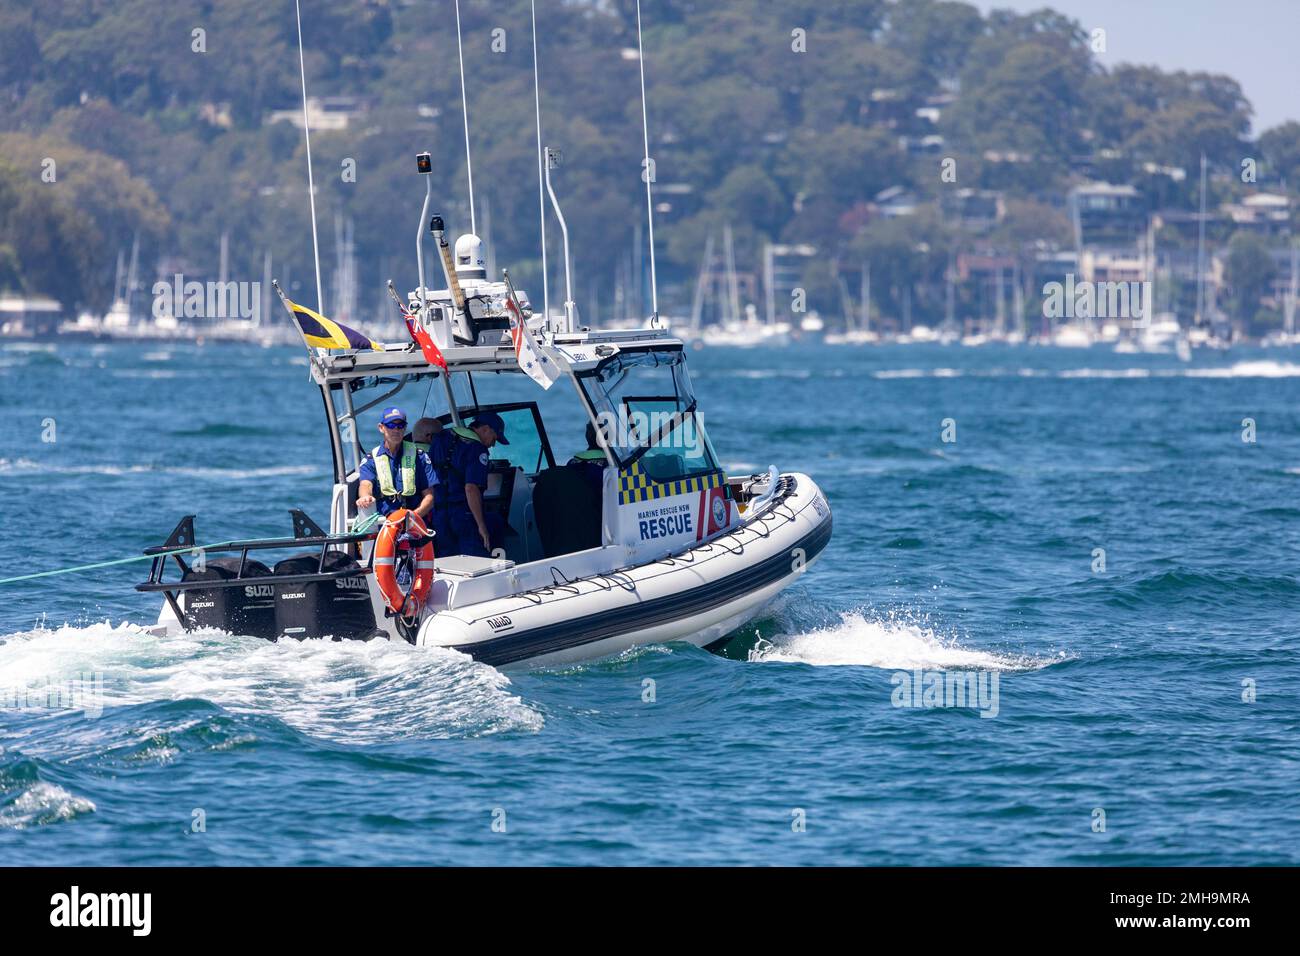 Marine Rescue NSW, équipe bénévole, sauvetage d'un petit canot pneumatique sur Pittwater Sydney, remorquage du canot pneumatique de retour à la base, Sydney, NSW, Australie Banque D'Images